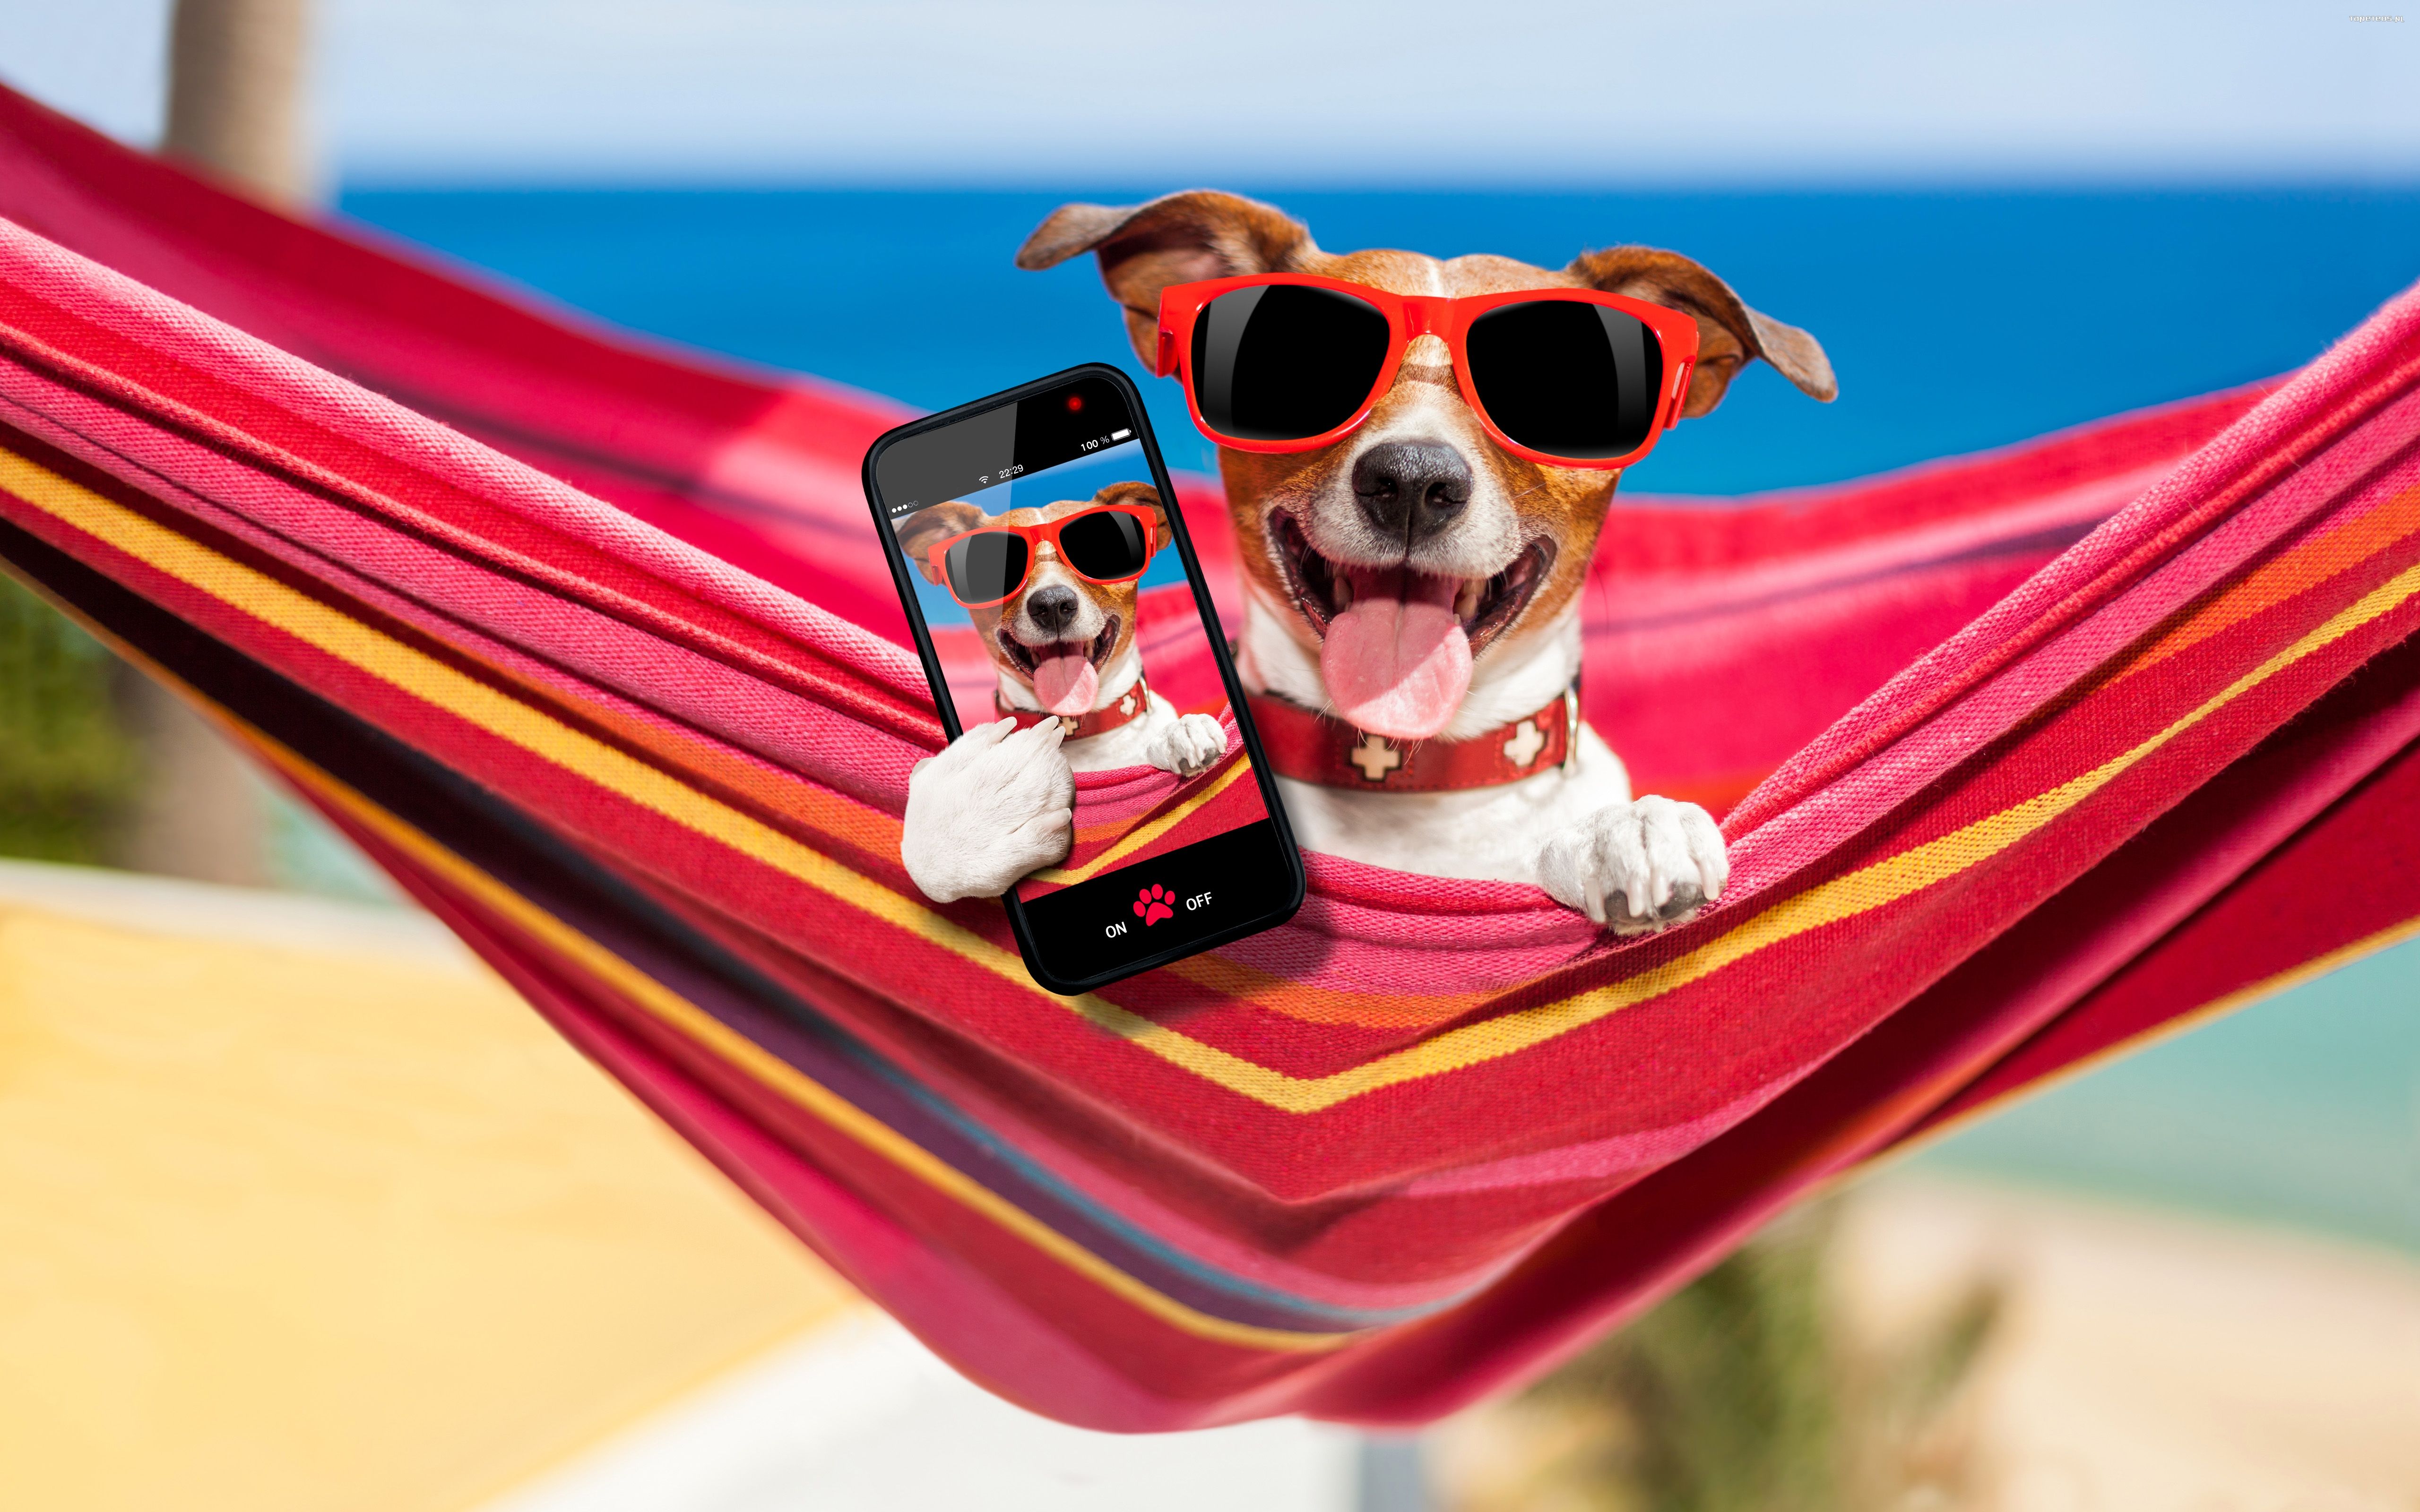 Jack Russell Terrier 105 Psy, Zwierzeta, Humor, Hamak, Okulary, Telefon, Smartfon